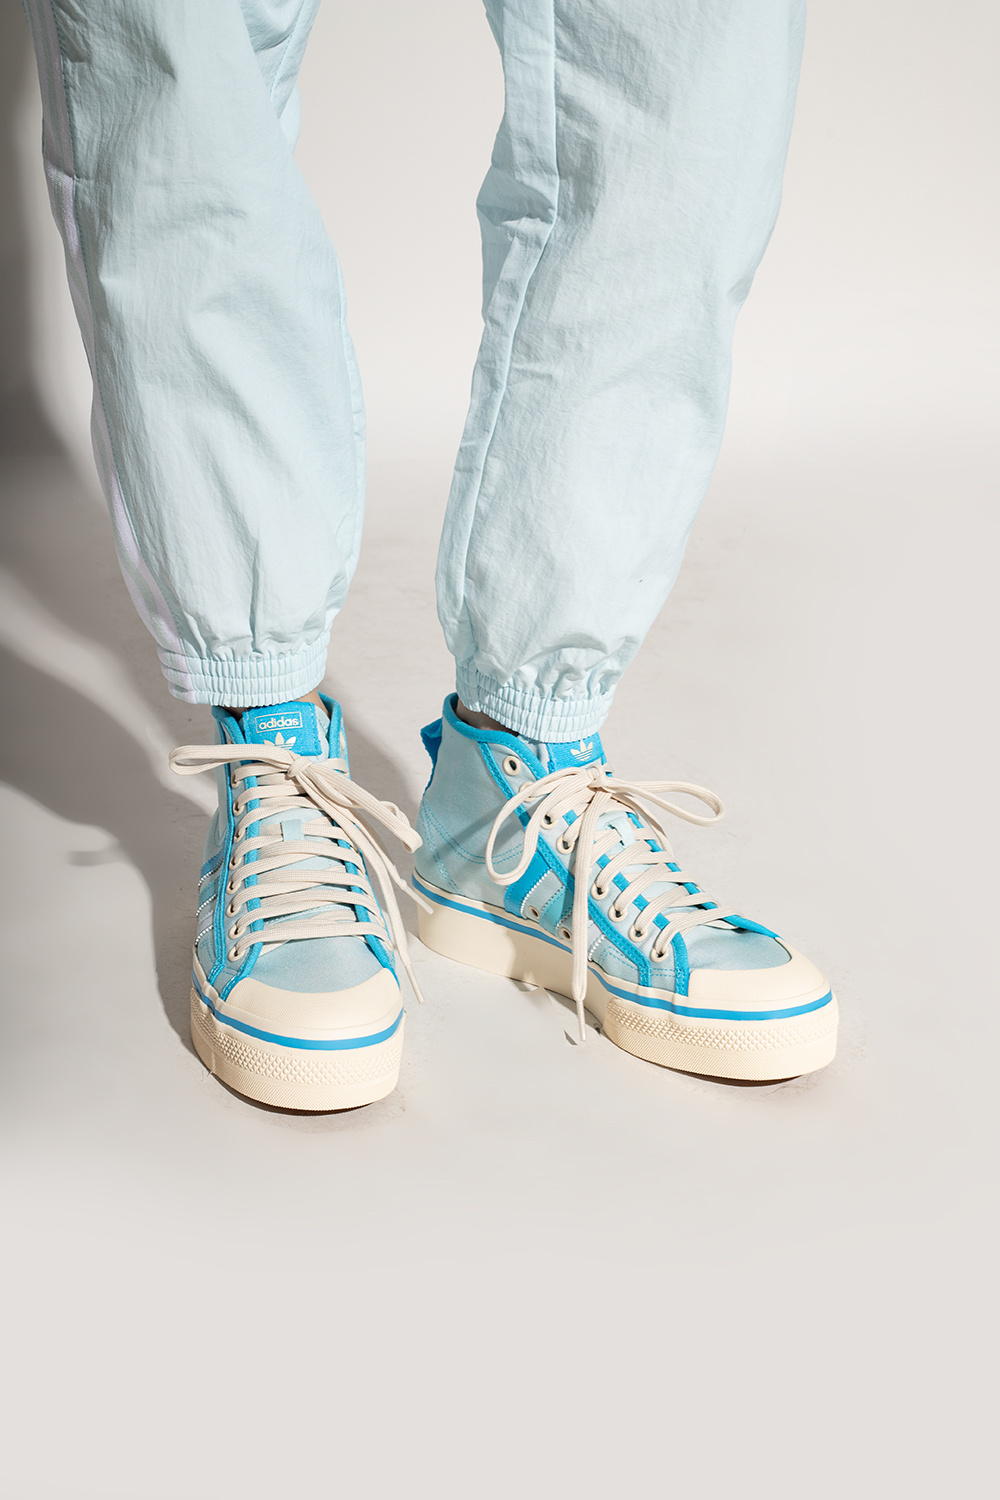 Light blue \'Nizza\' platform sneakers ADIDAS - Originals Italy Vitkac